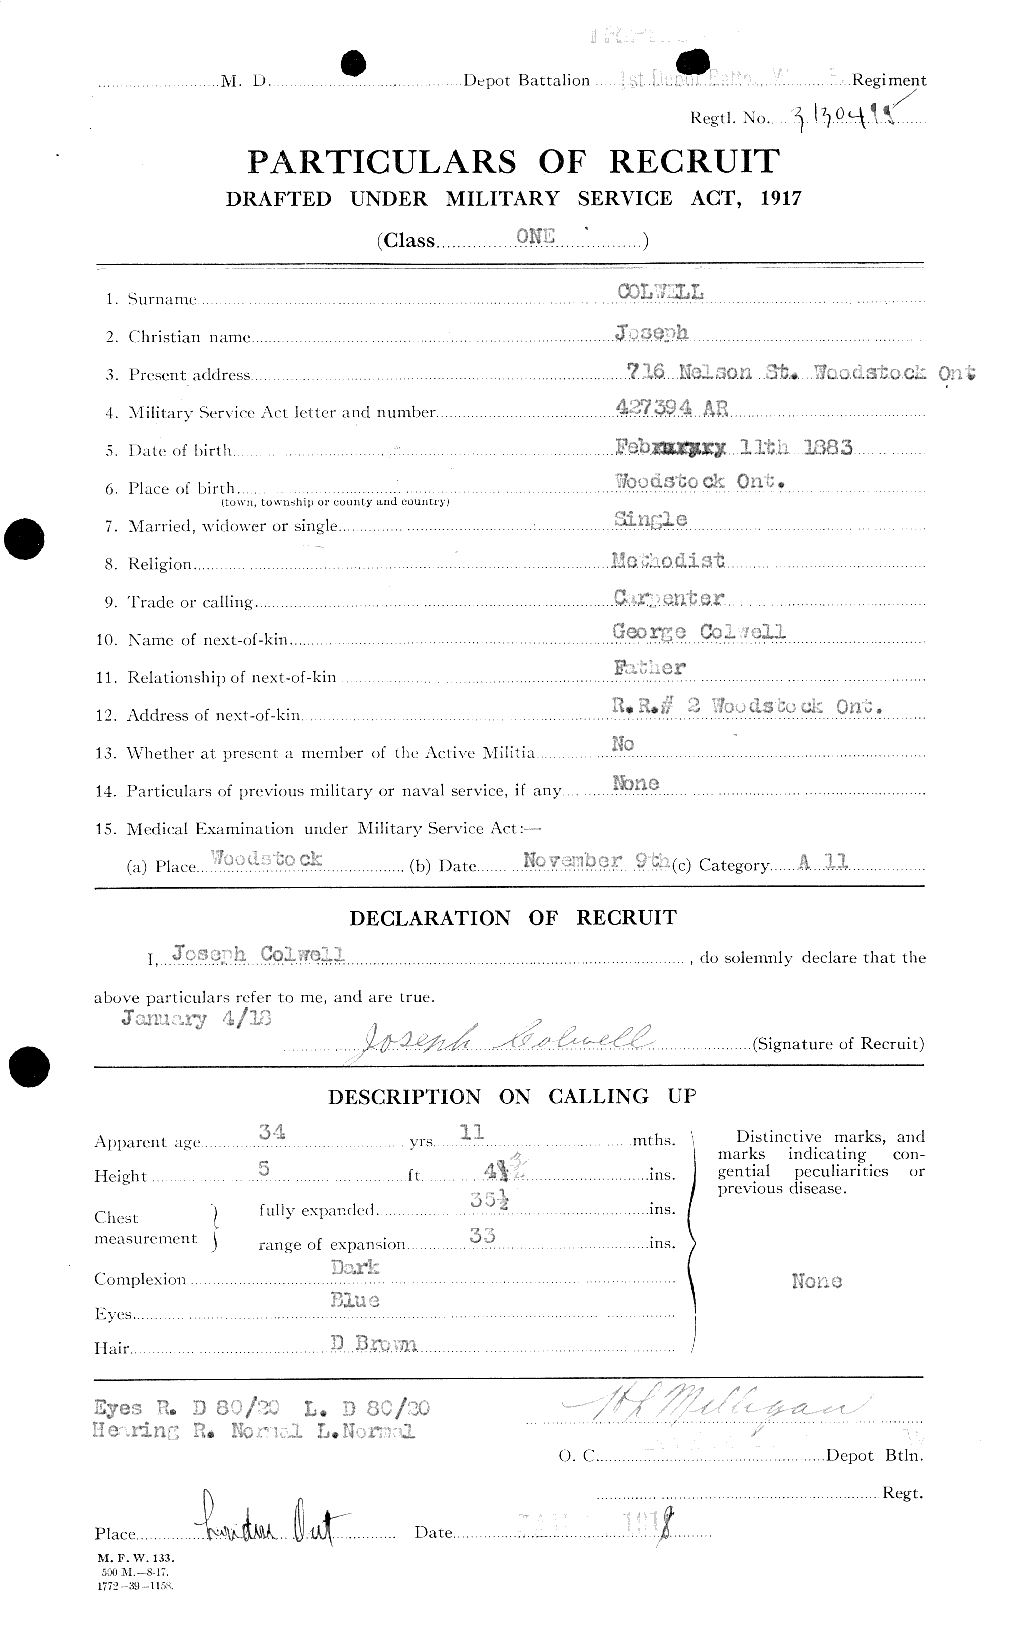 Dossiers du Personnel de la Première Guerre mondiale - CEC 043848a